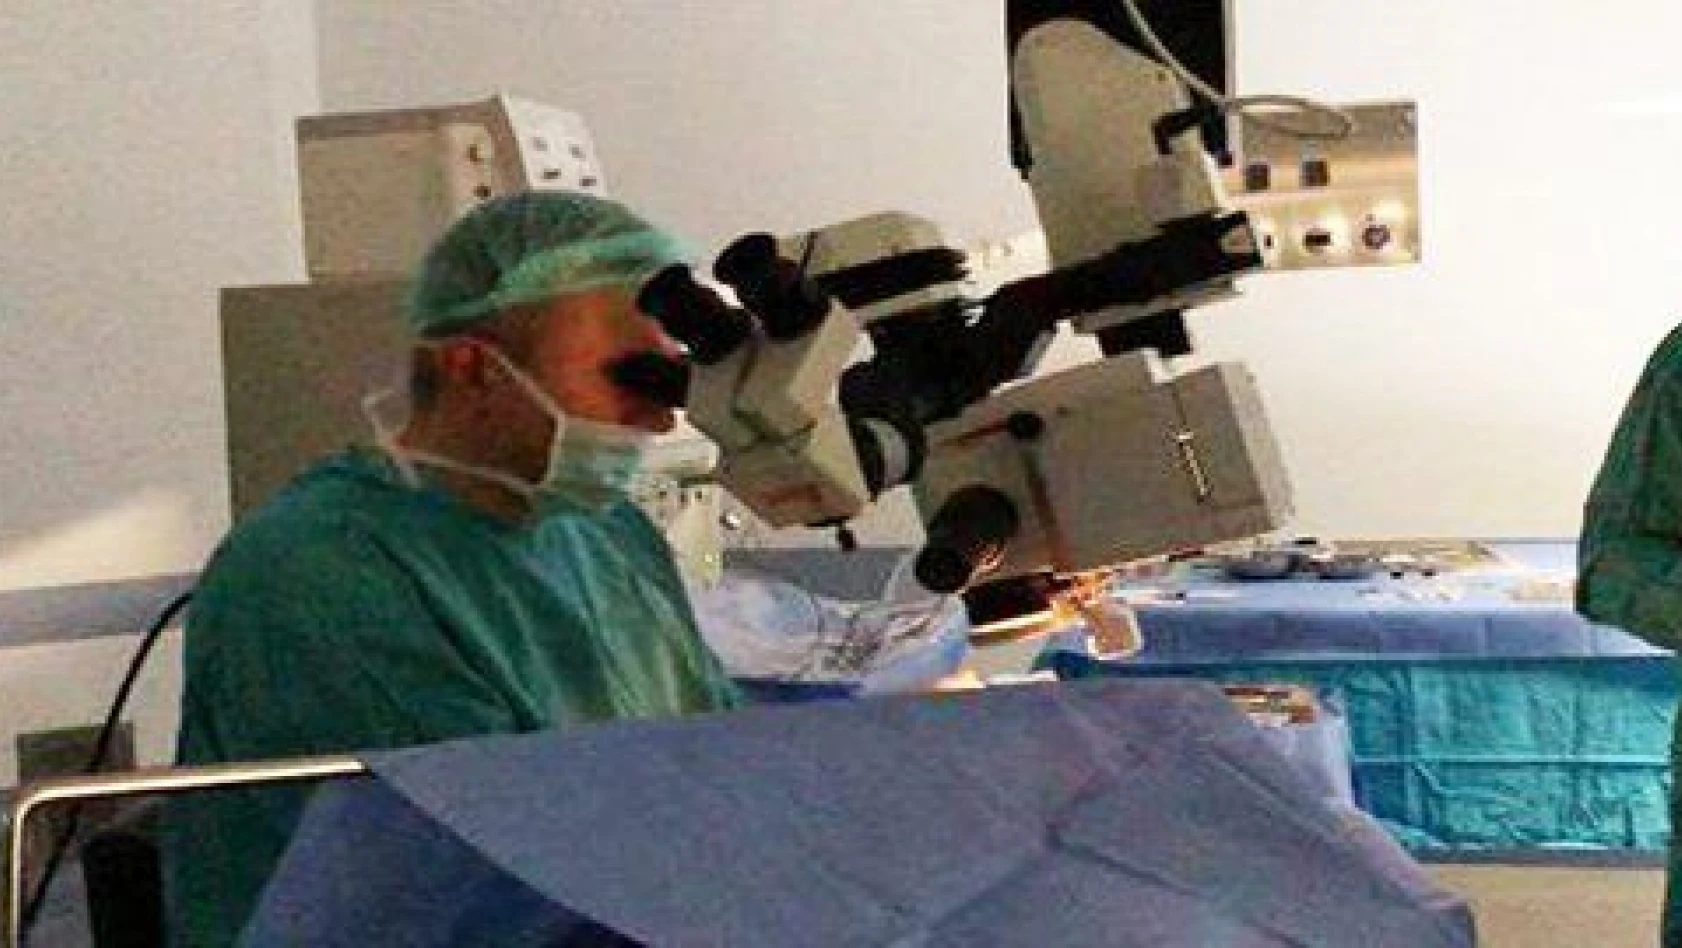 Göktaş Kayseri'de ilk kez göz tansiyonunu dikişsiz ameliyatla tedavi etti